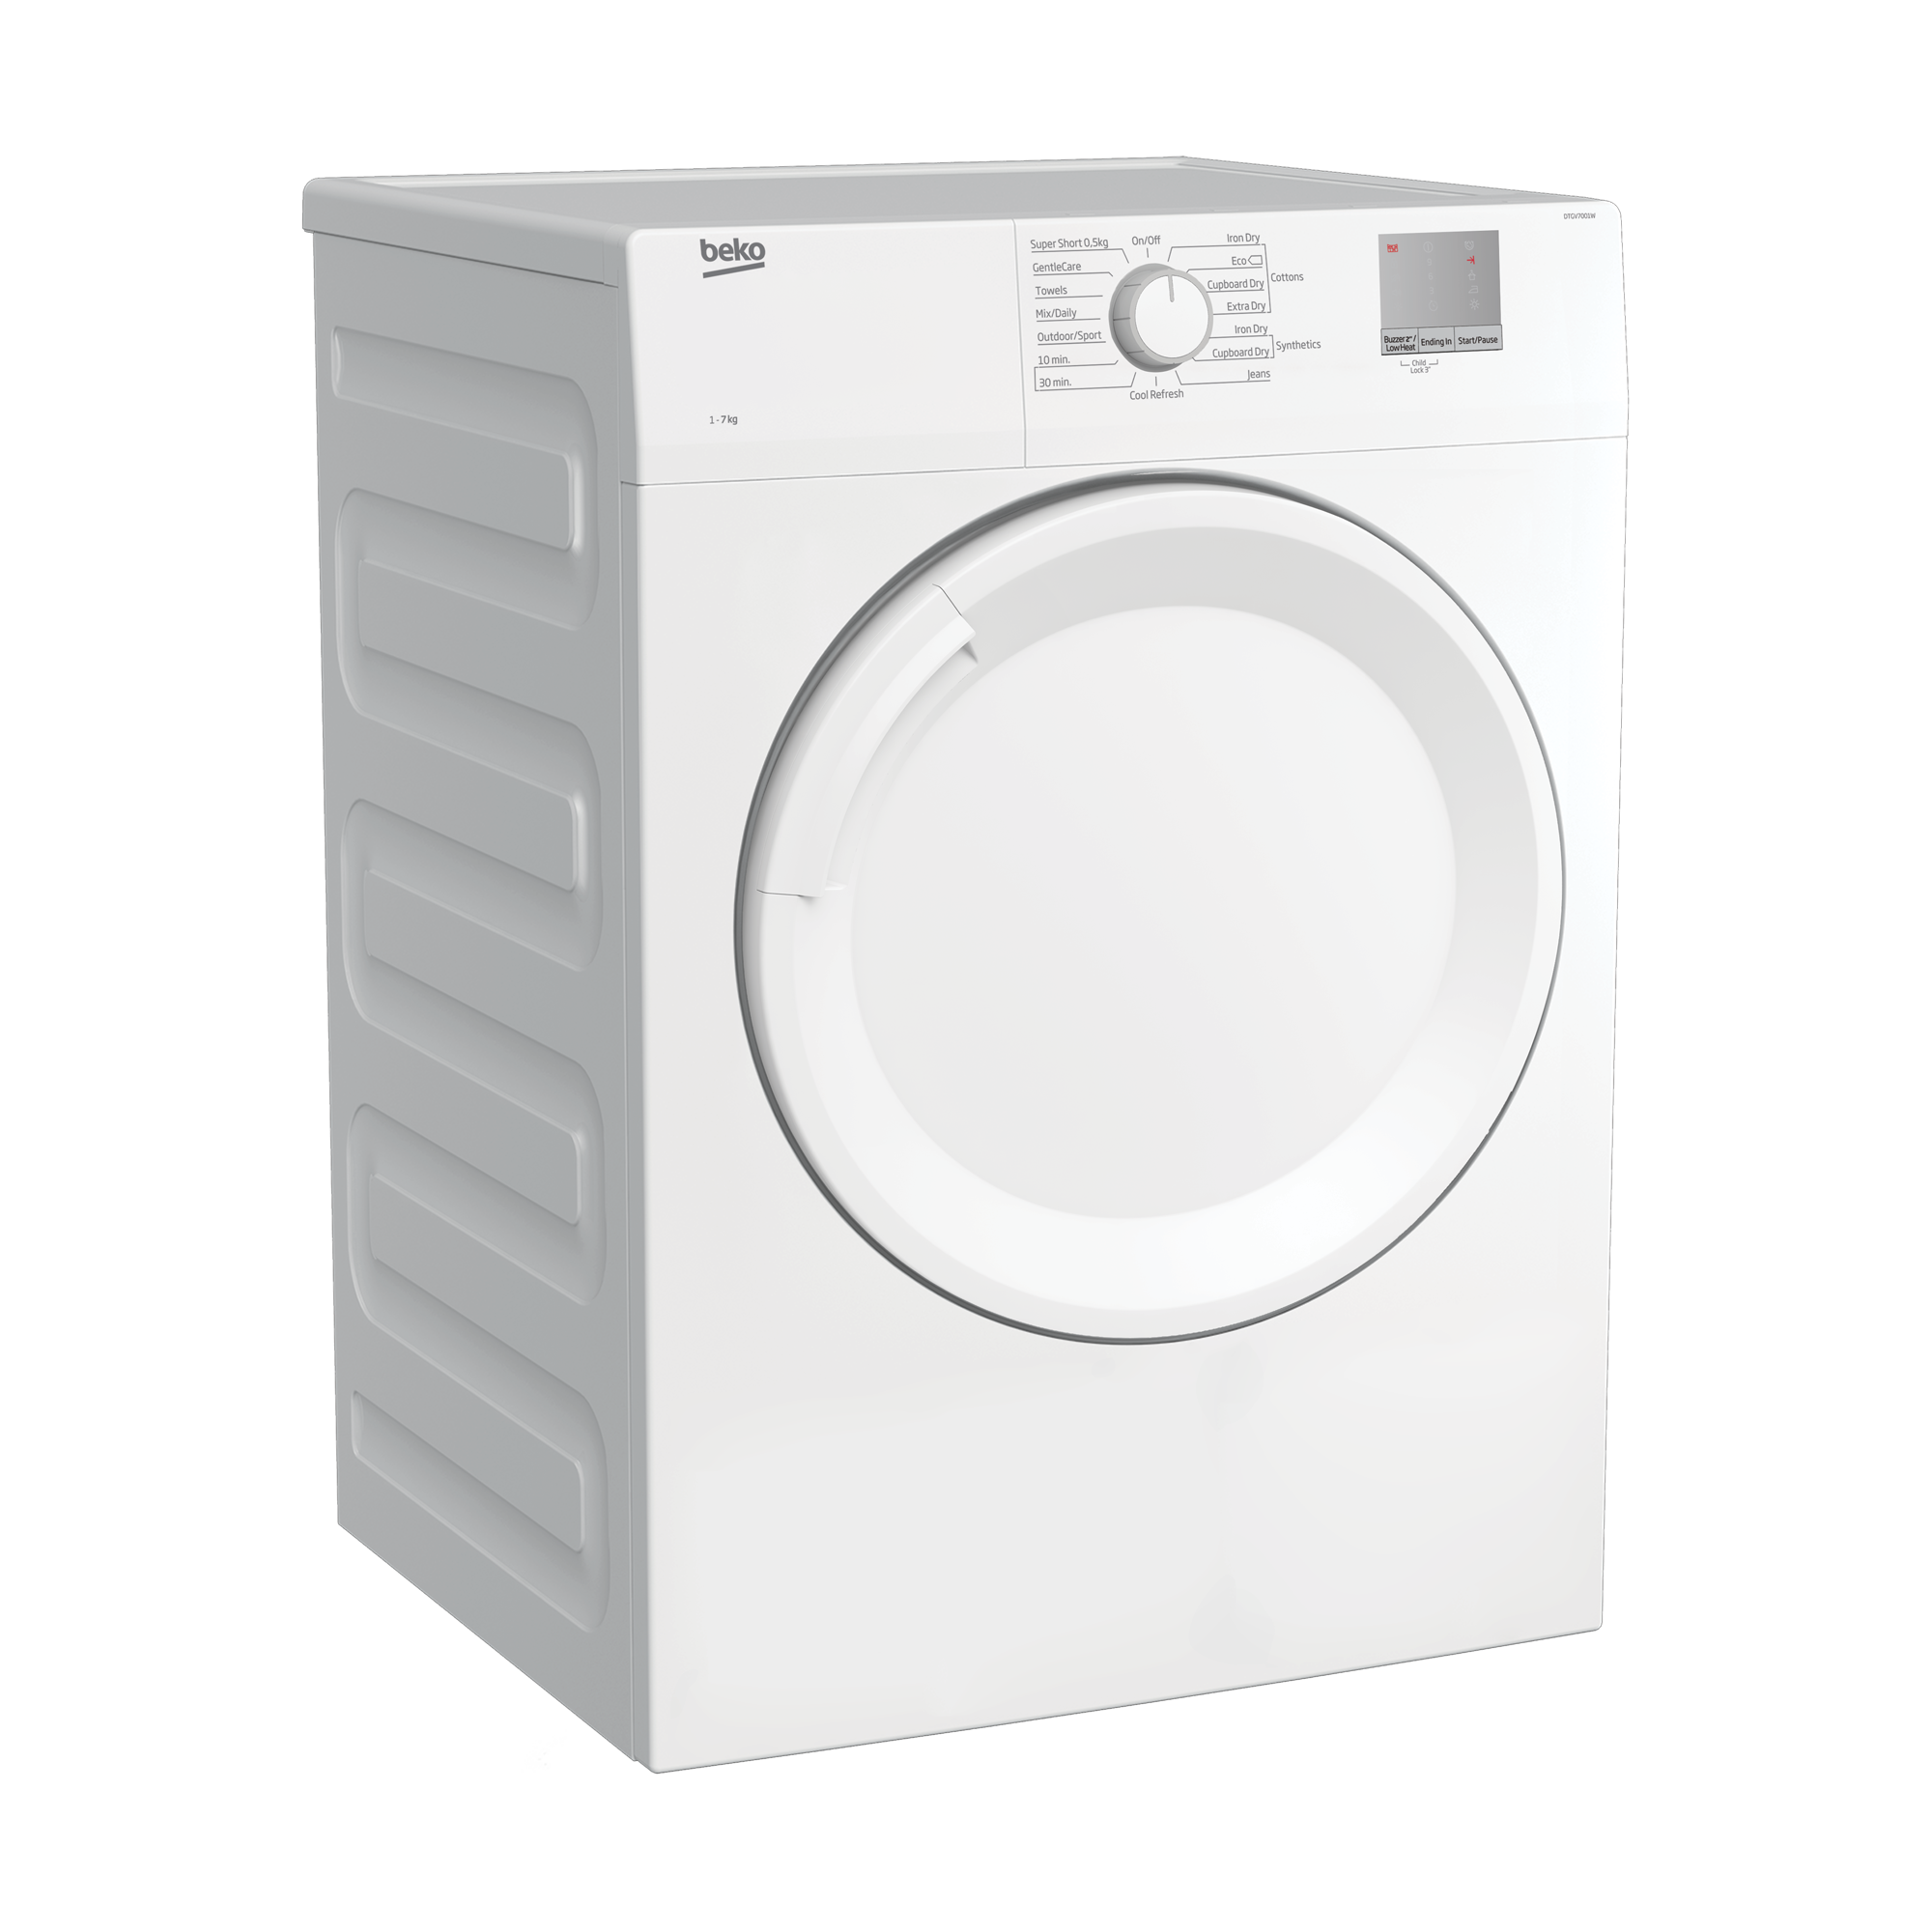 BEKO Tumble Dryer Filter - New Version DRVS62 / DRVT61W / DV1171